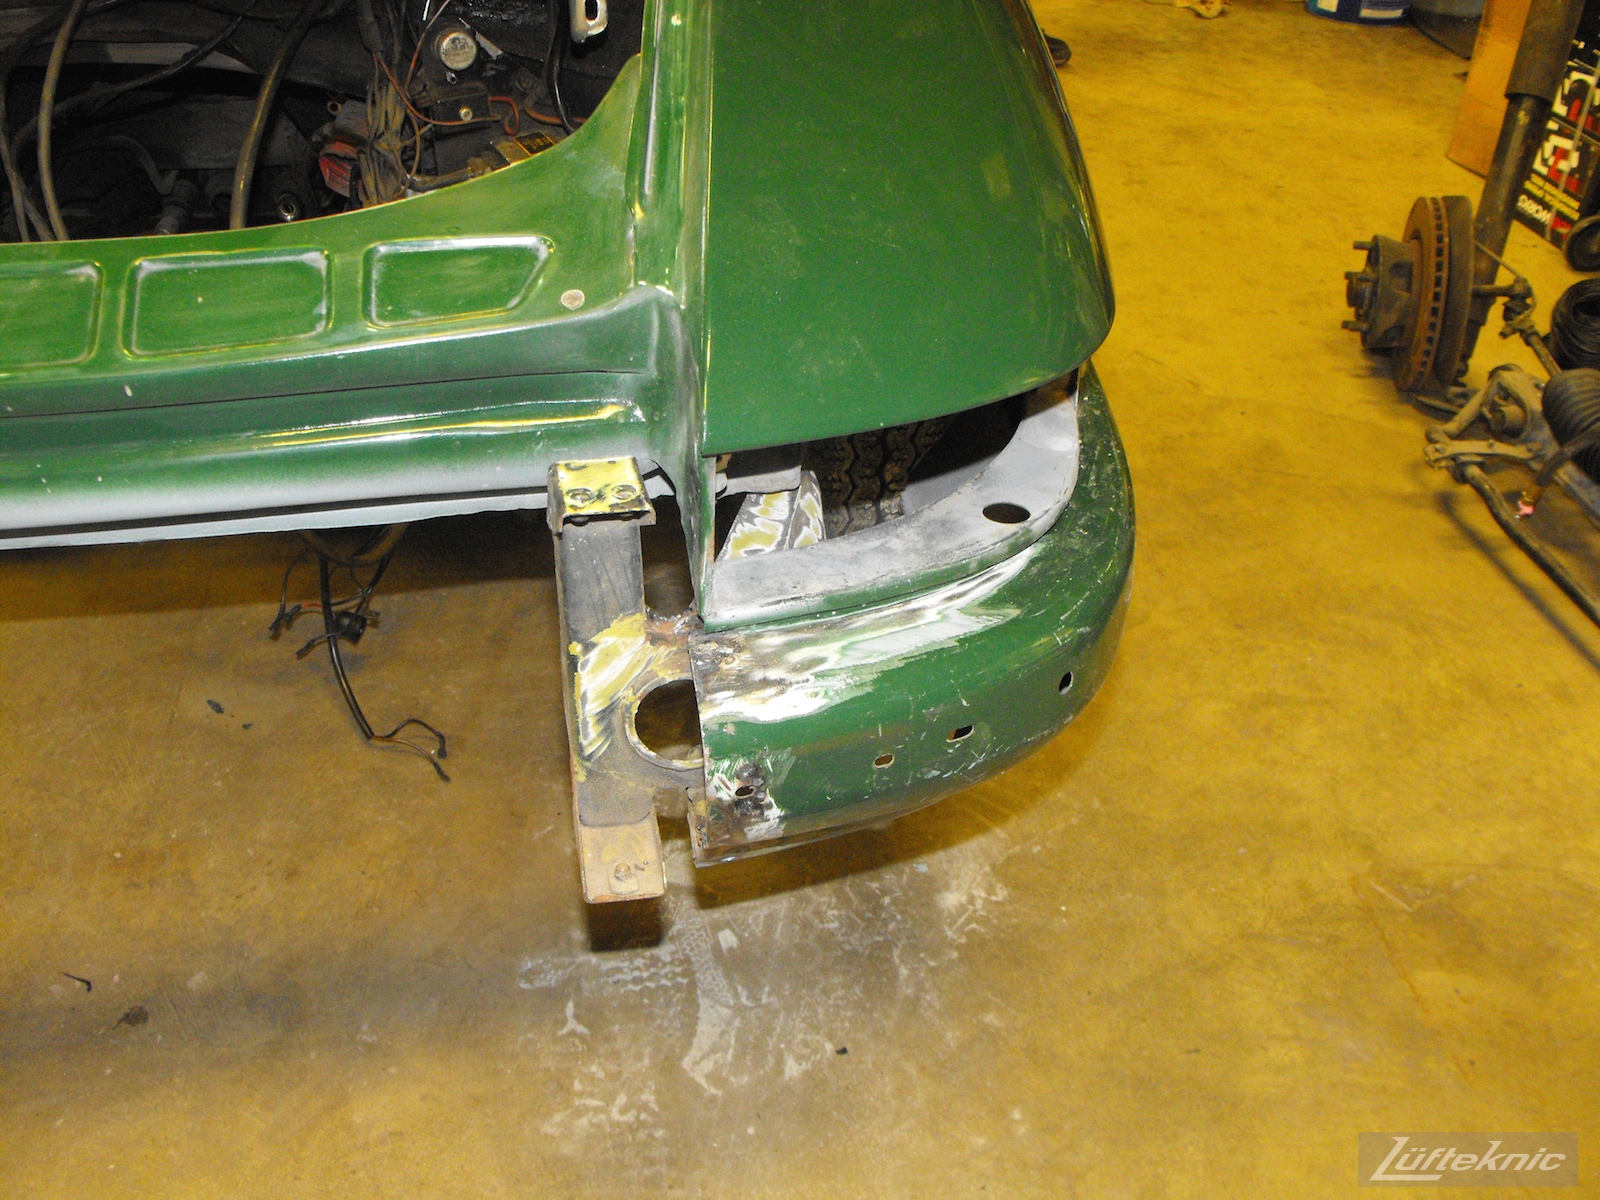 Rear bumper repair on an Irish Green Porsche 912 undergoing restoration at Lufteknic.